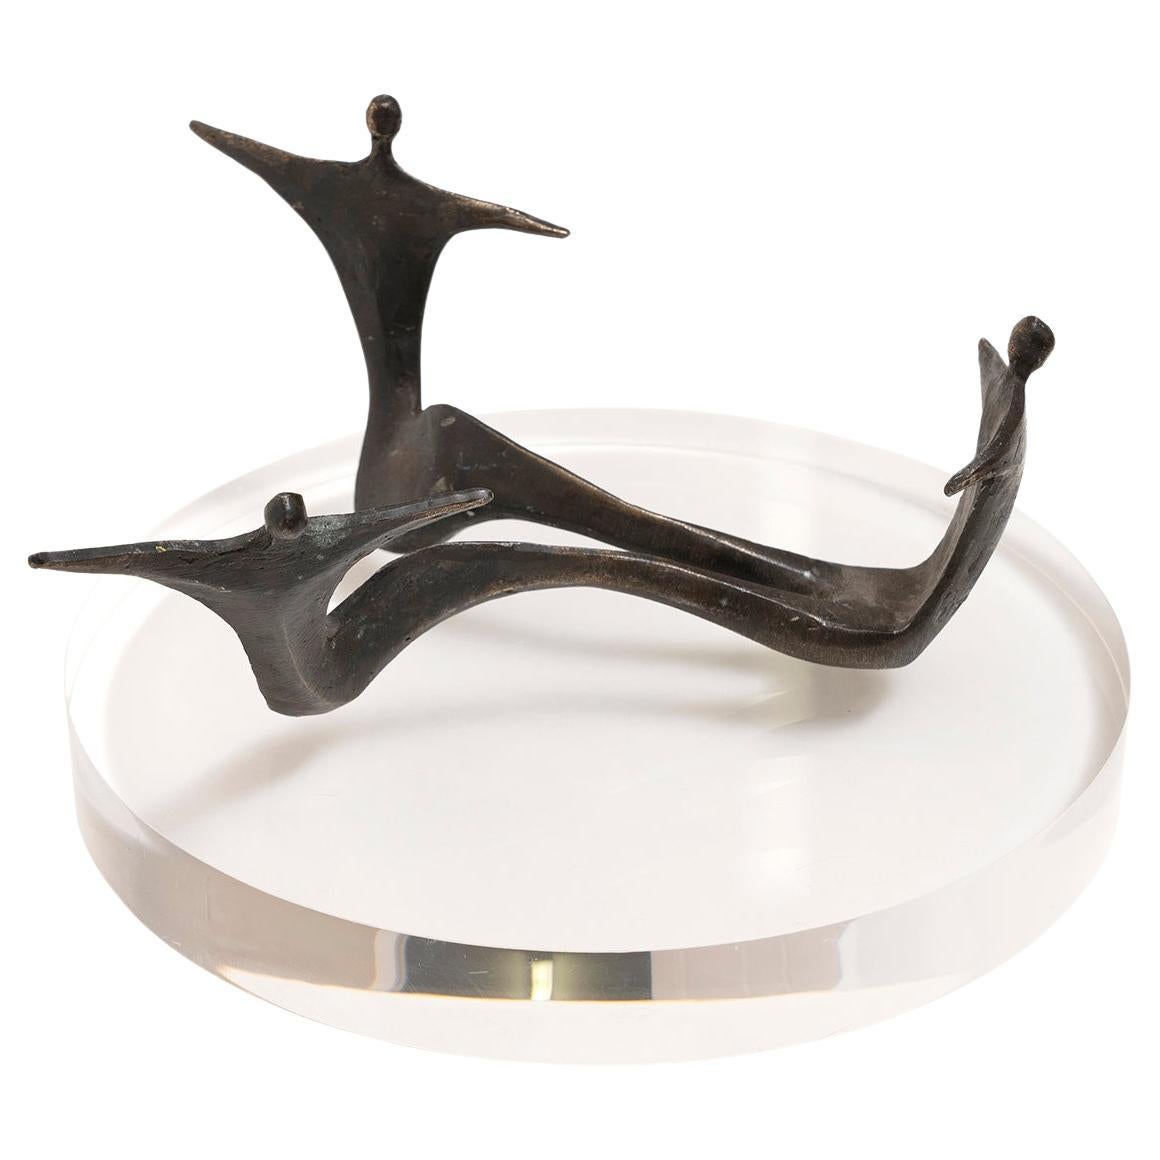 Sculpture figurative en bronze - 3 danseurs - Diamètre abstrait biomorphique 22 cm 8 3/4 po.